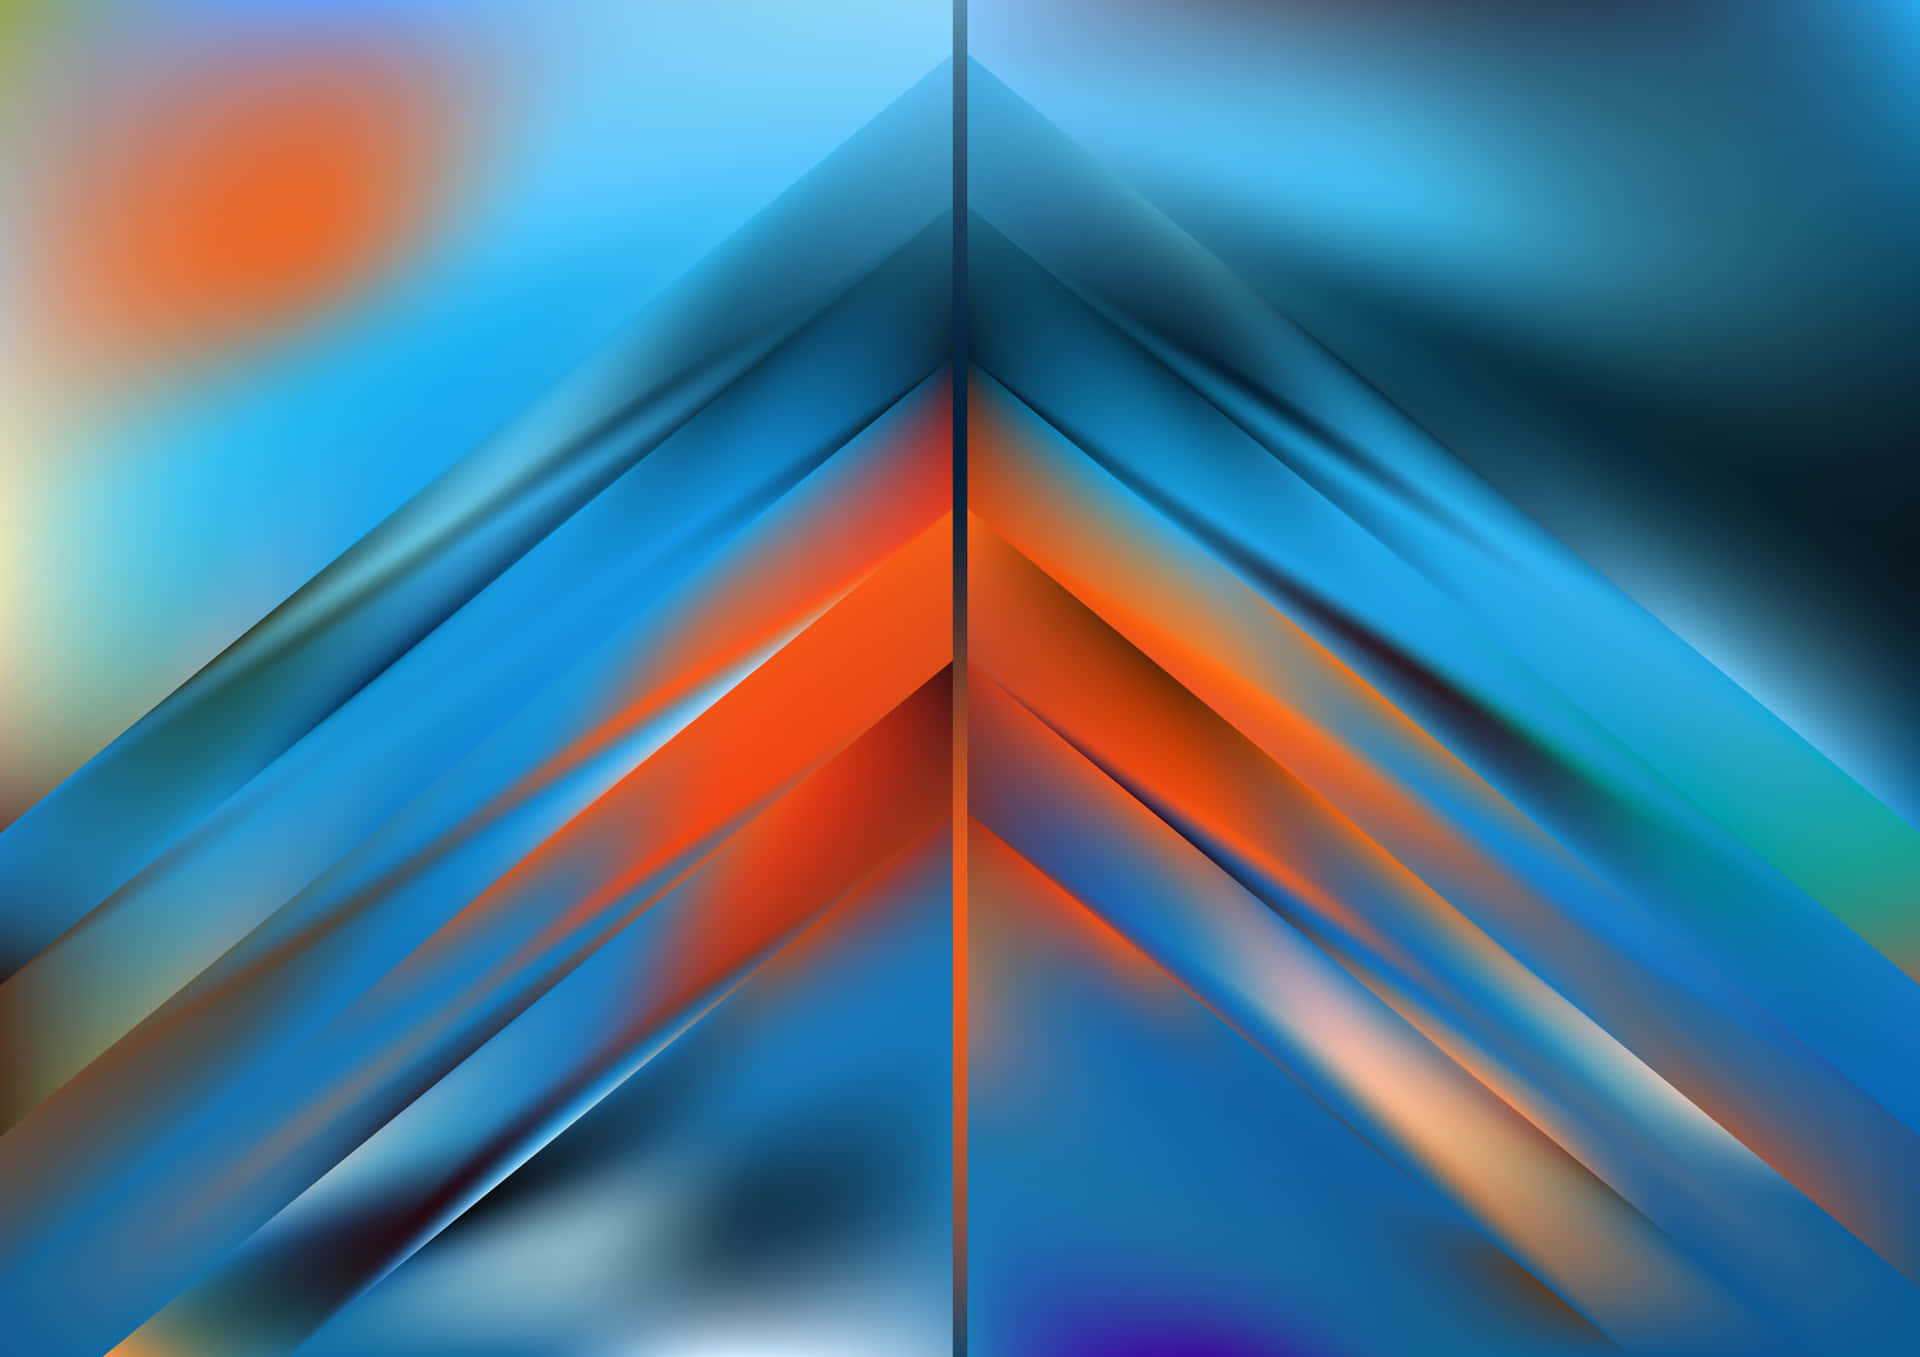 En kreativ sammensætning af orange og blå trekanter. Wallpaper